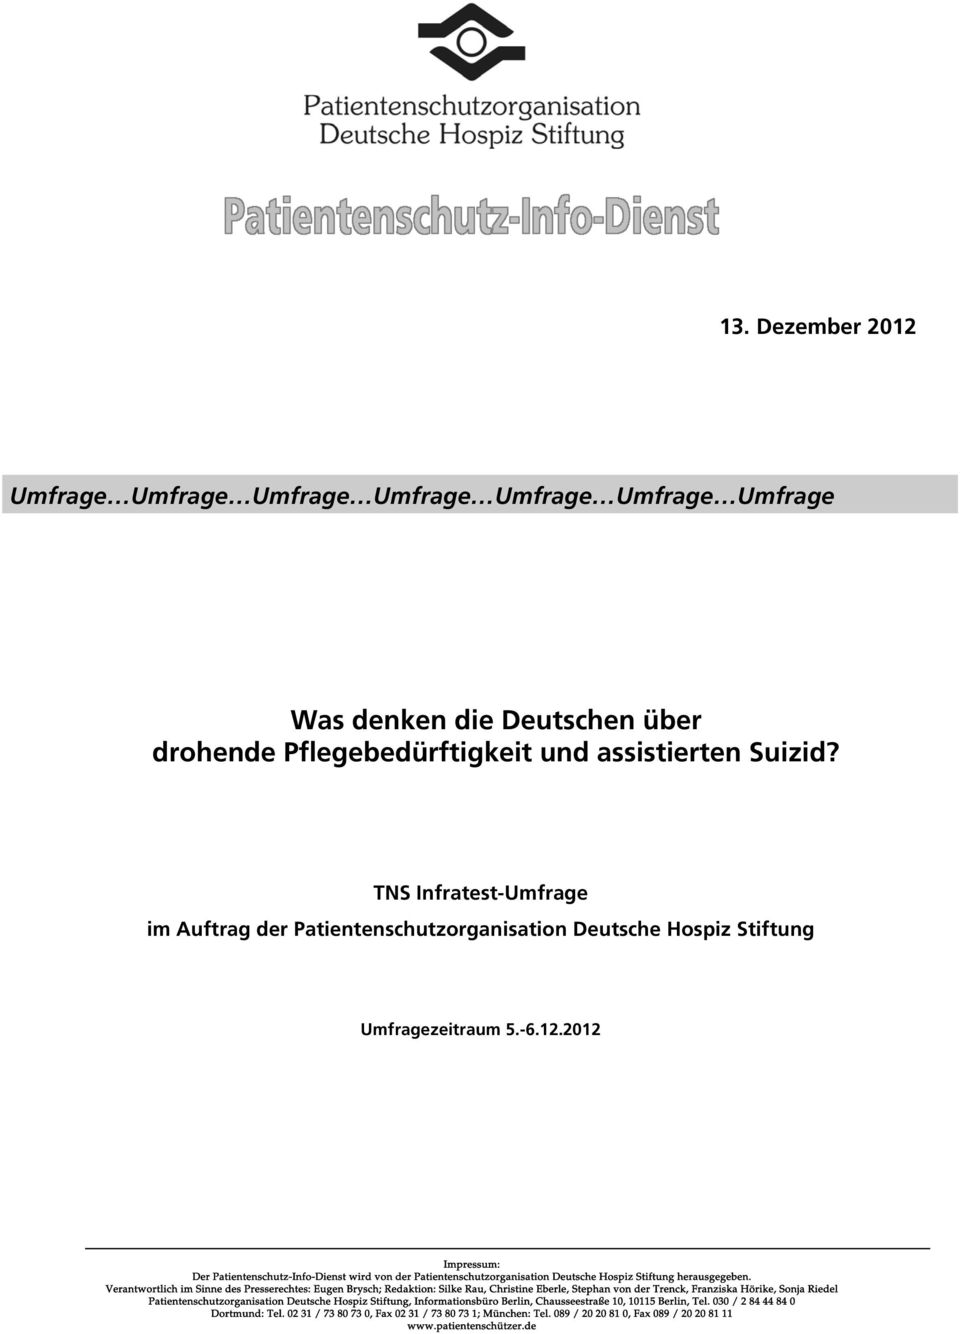 2012 Impressum: Der Patientenschutz-Info-Dienst wird von der Patientenschutzorganisation Deutsche Hospiz Stiftung herausgegeben.